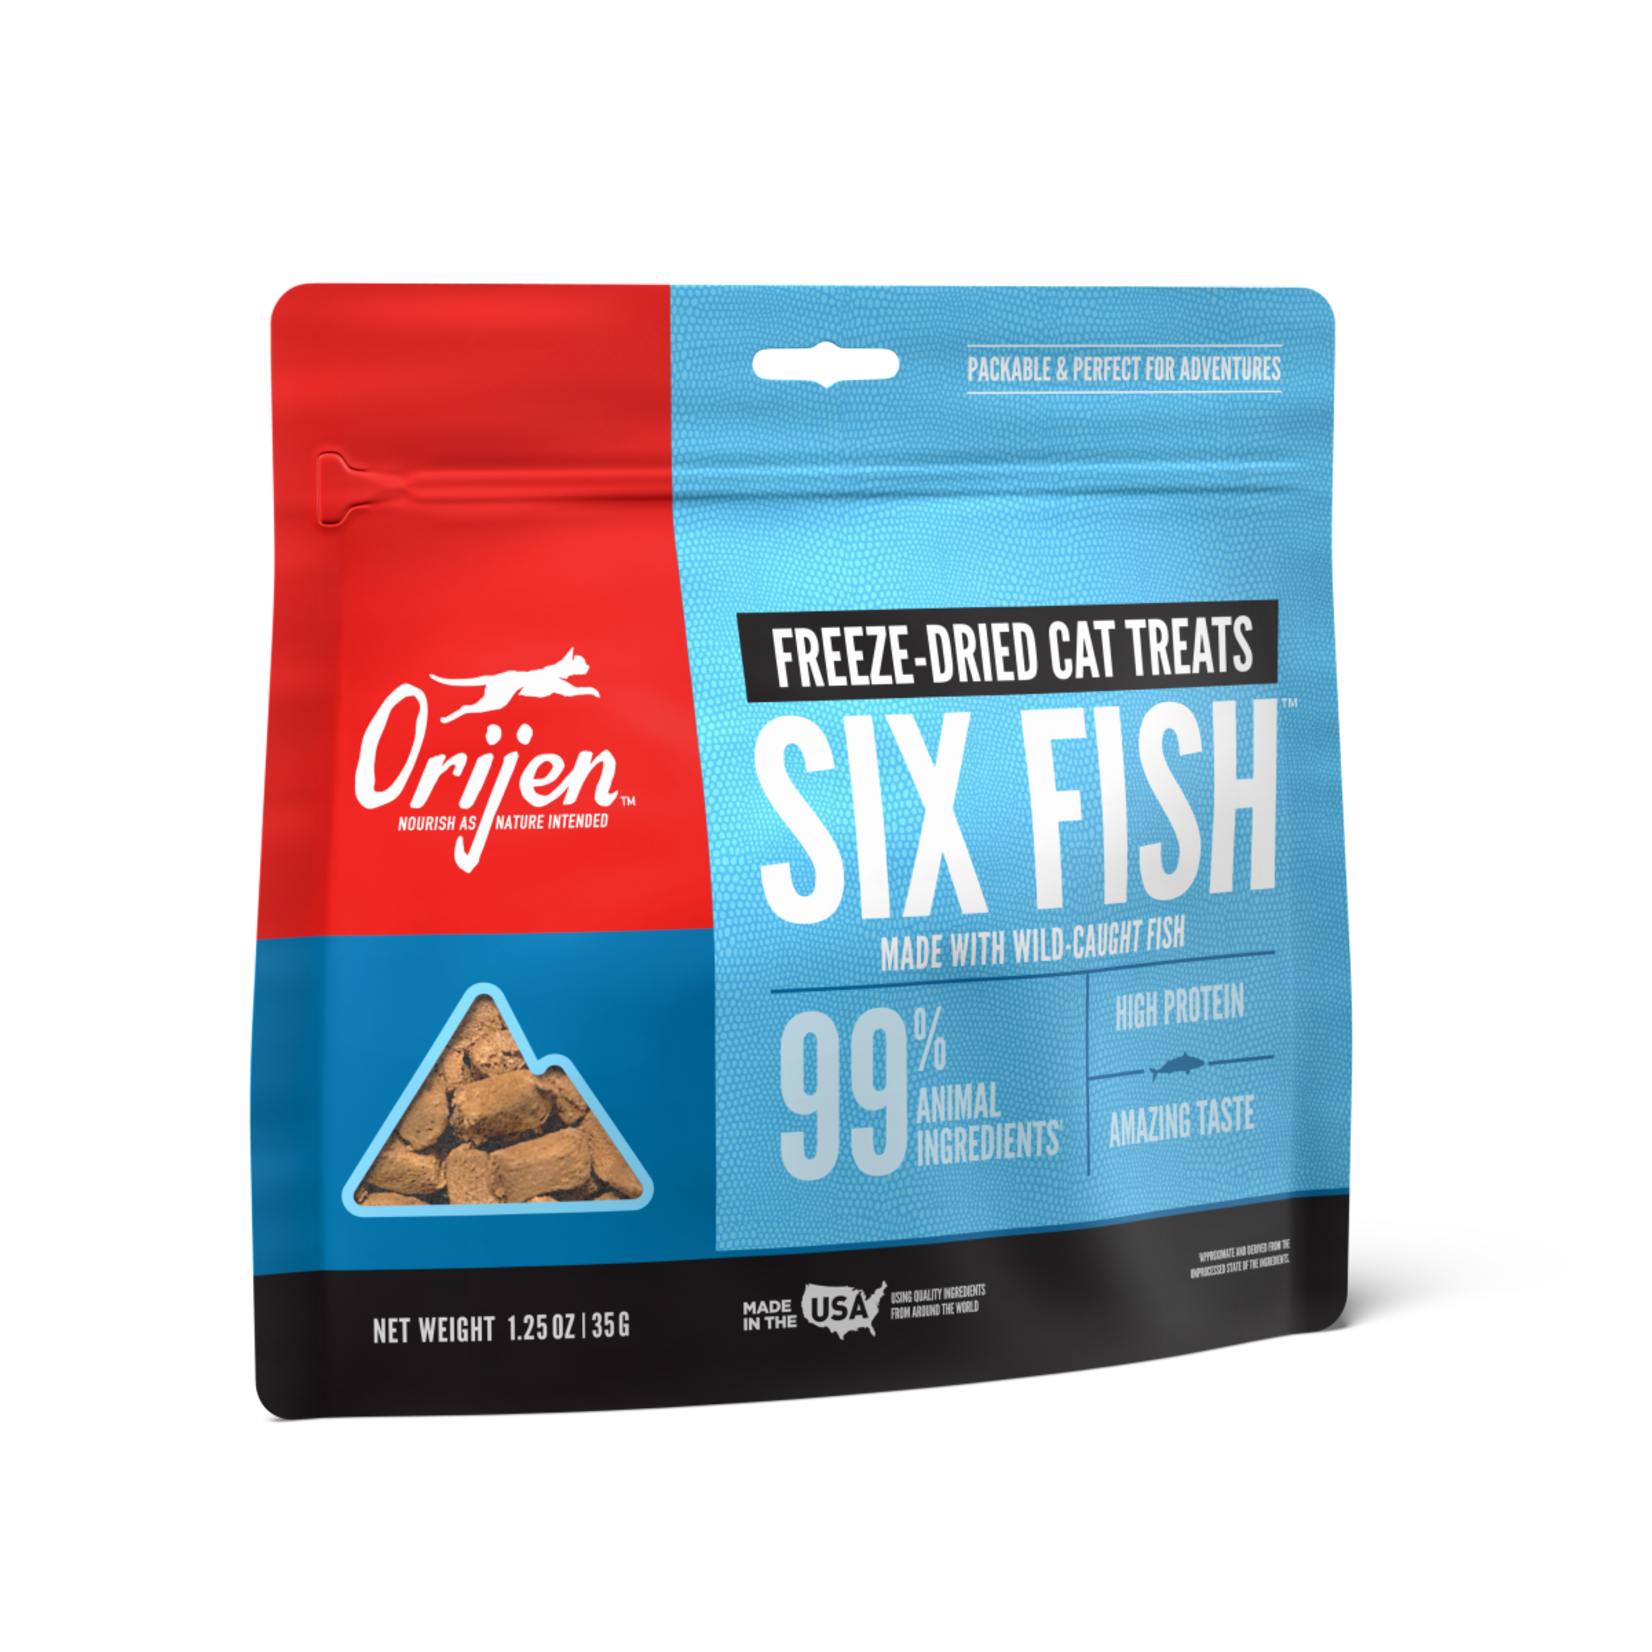 Champion Pet Foods Orijen Cat Freeze-dried Six Fish Treat 1.25 OZ